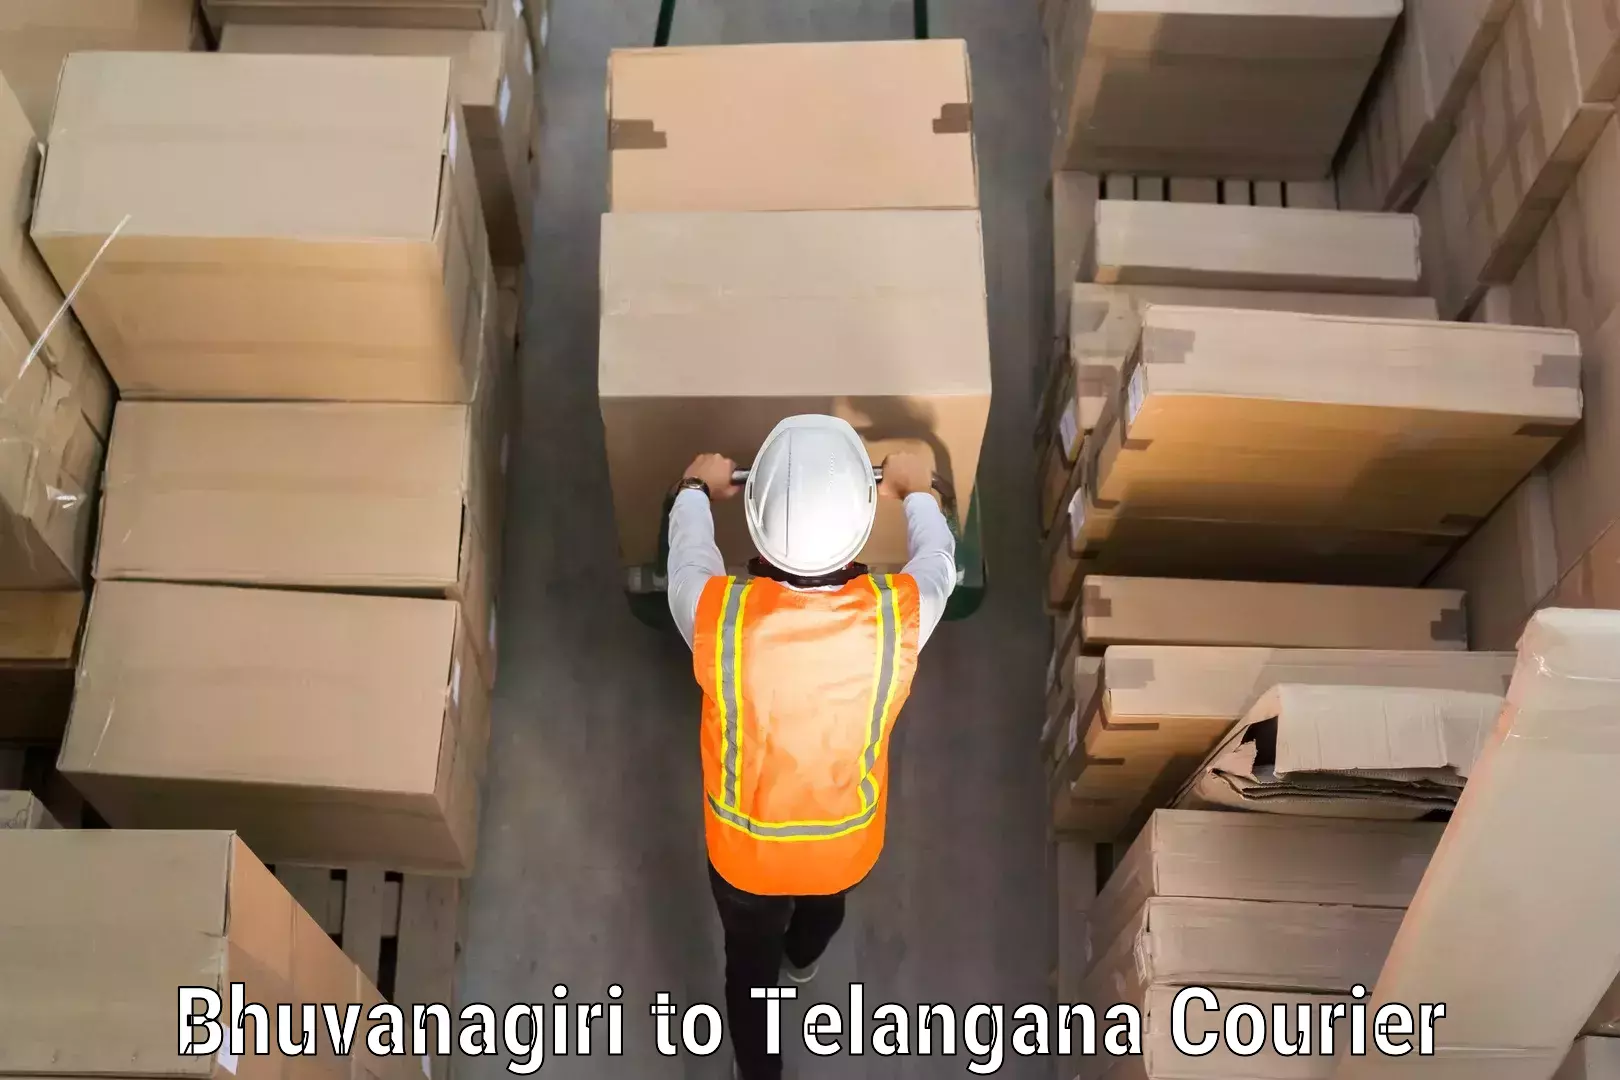 Luggage shipment tracking Bhuvanagiri to Telangana